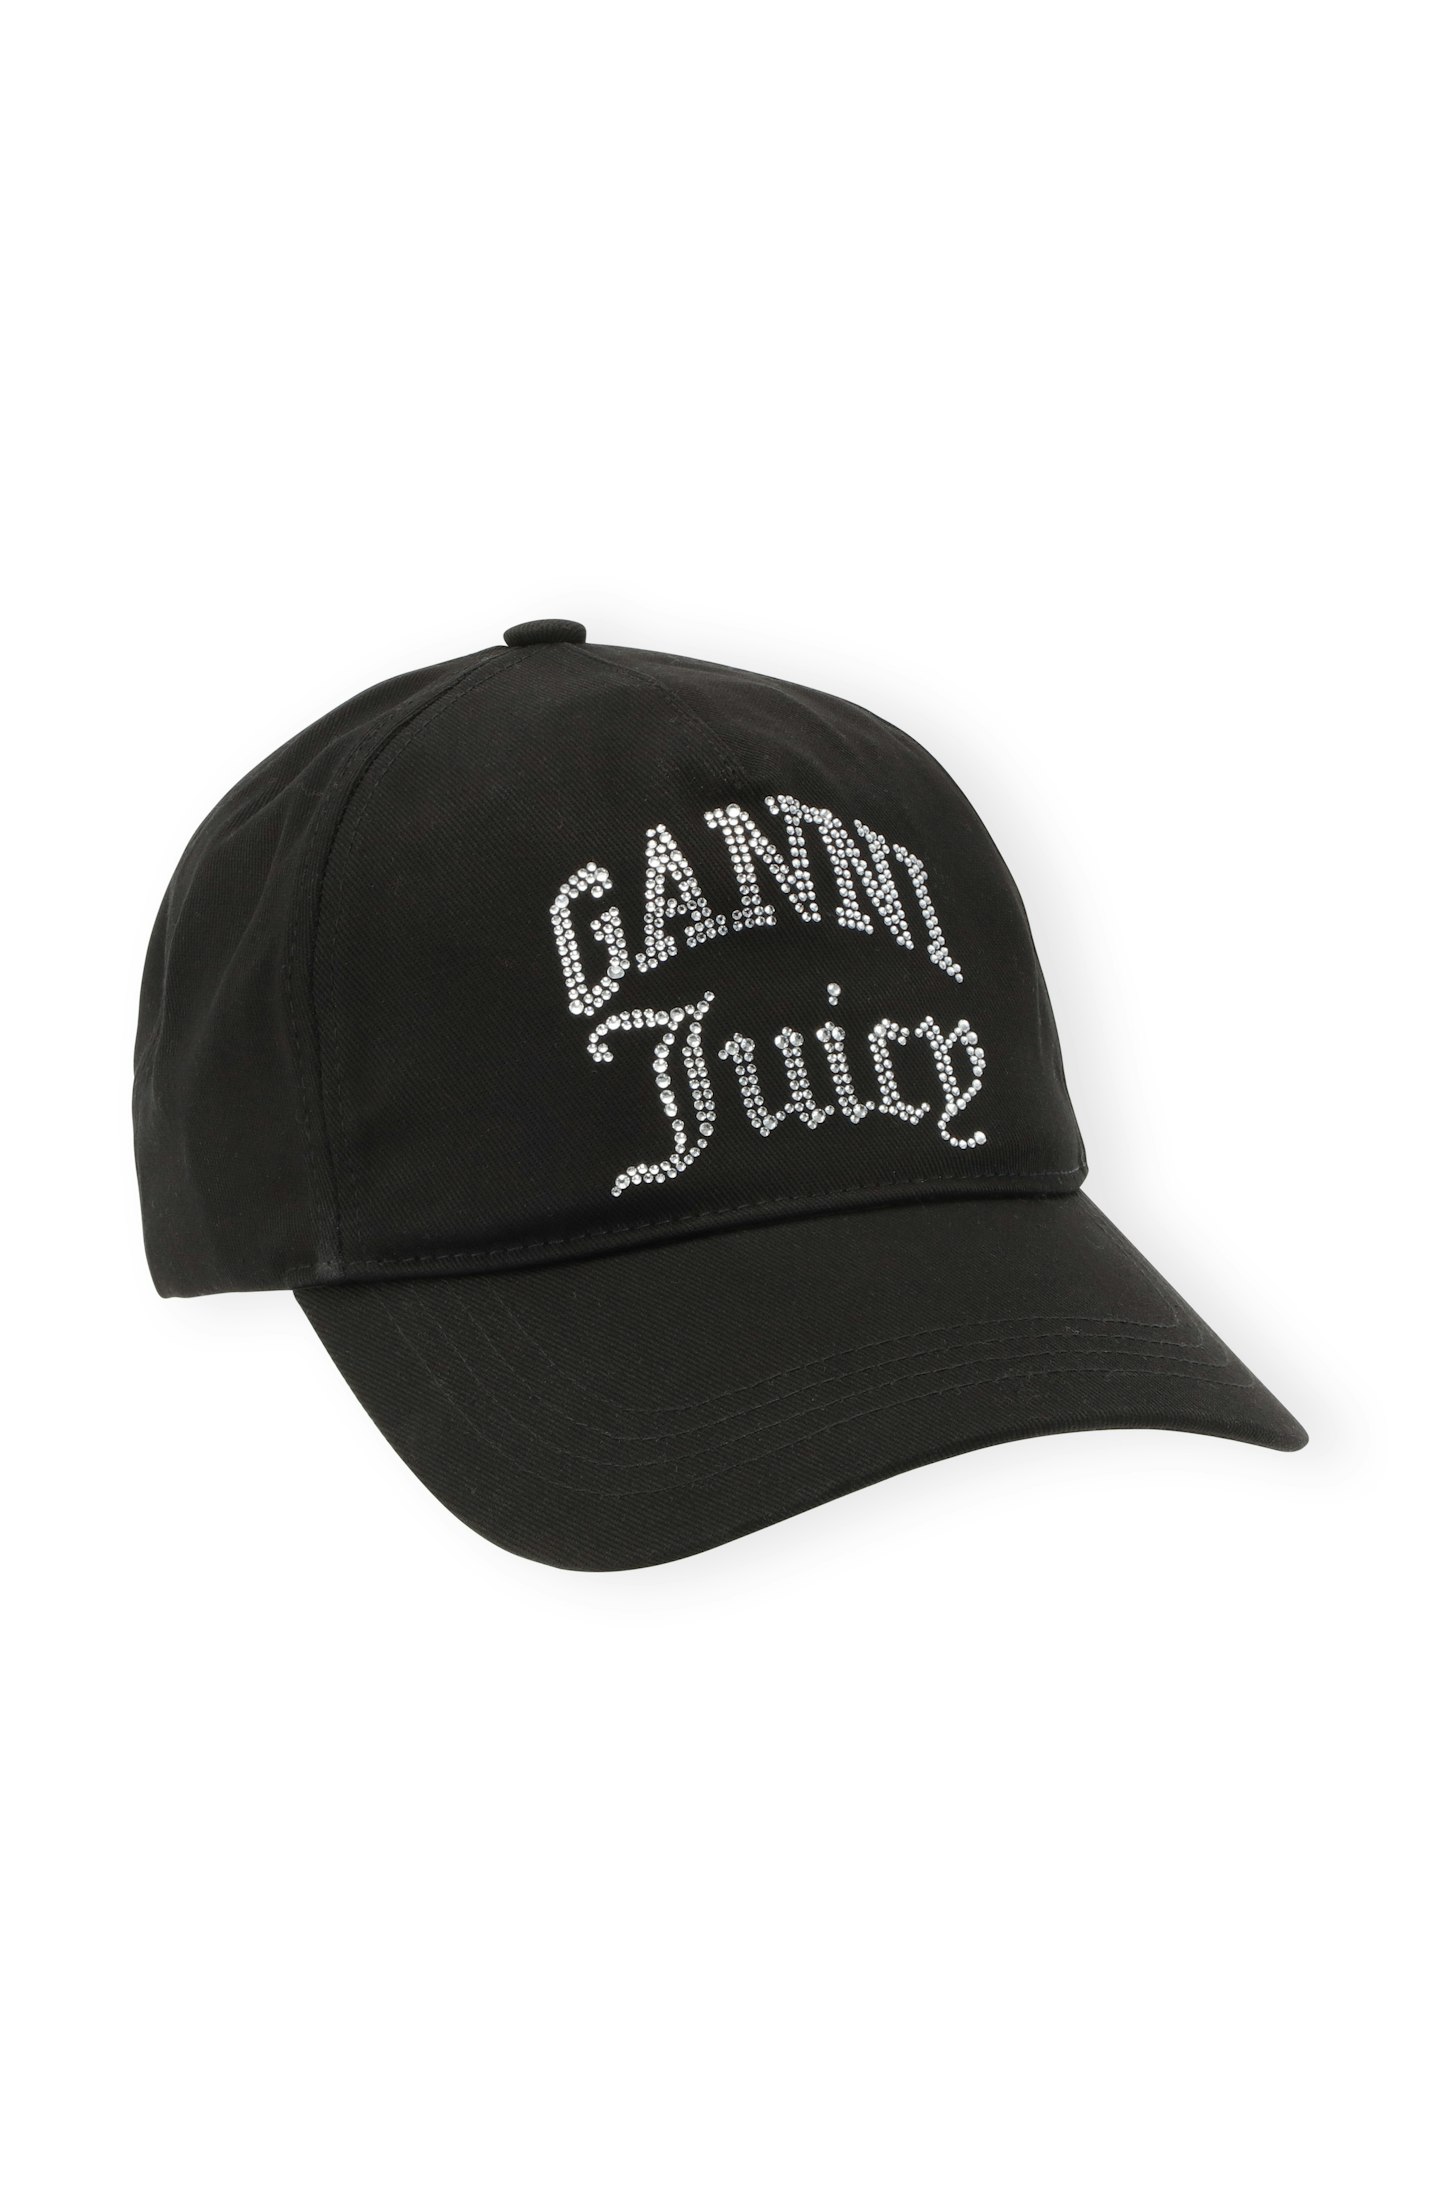 GANNI x Juicy Couture Heavy Cotton Cap Black, £95